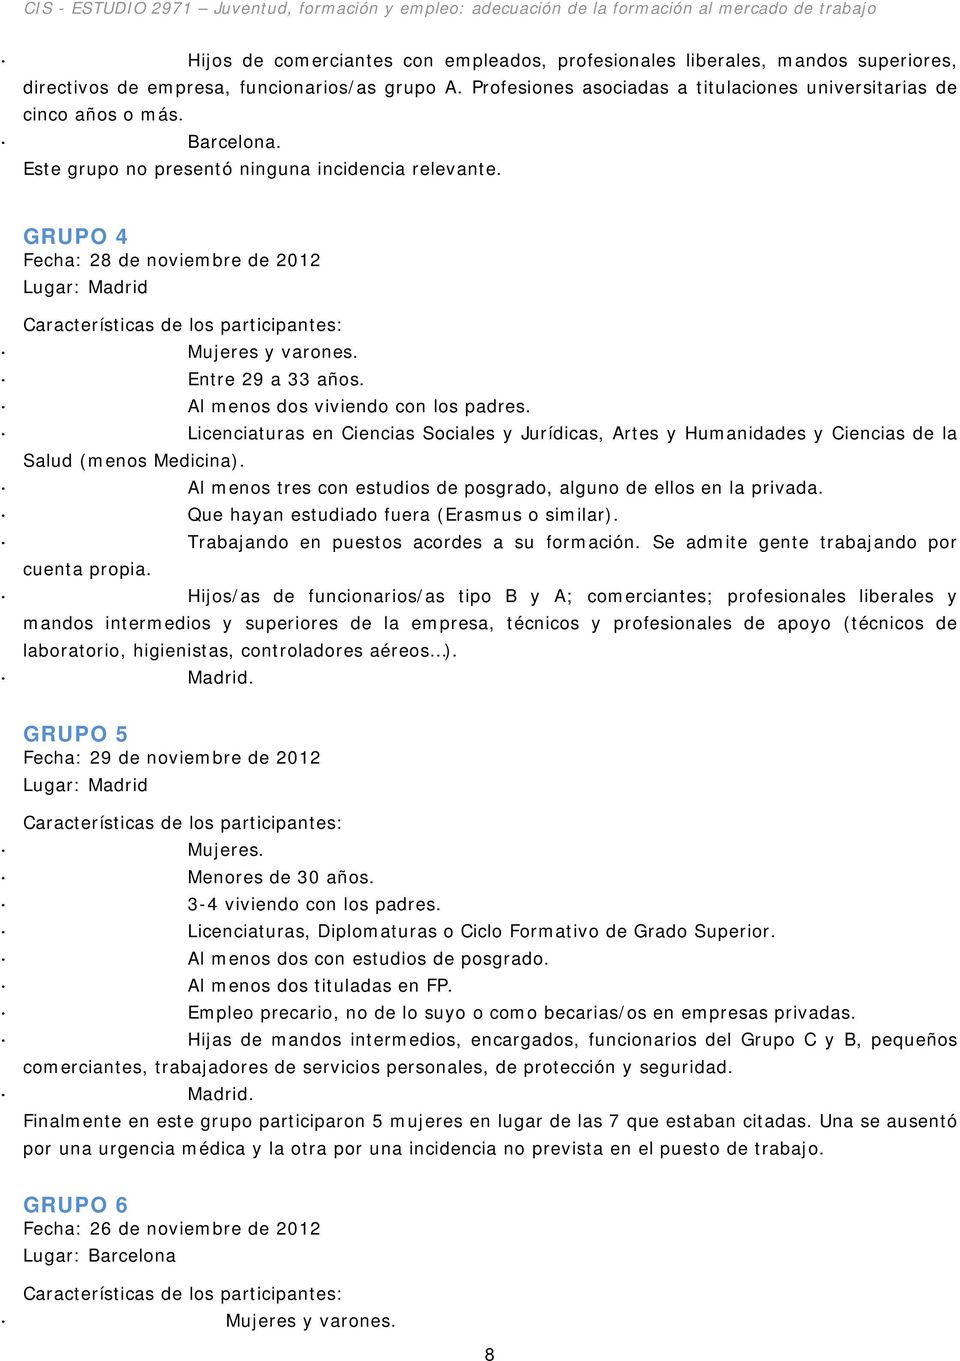 GRUPO 4 Fecha: 28 de noviembre de 2012 Lugar: Madrid Características de los participantes: Mujeres y varones. Entre 29 a 33 años. Al menos dos viviendo con los padres.